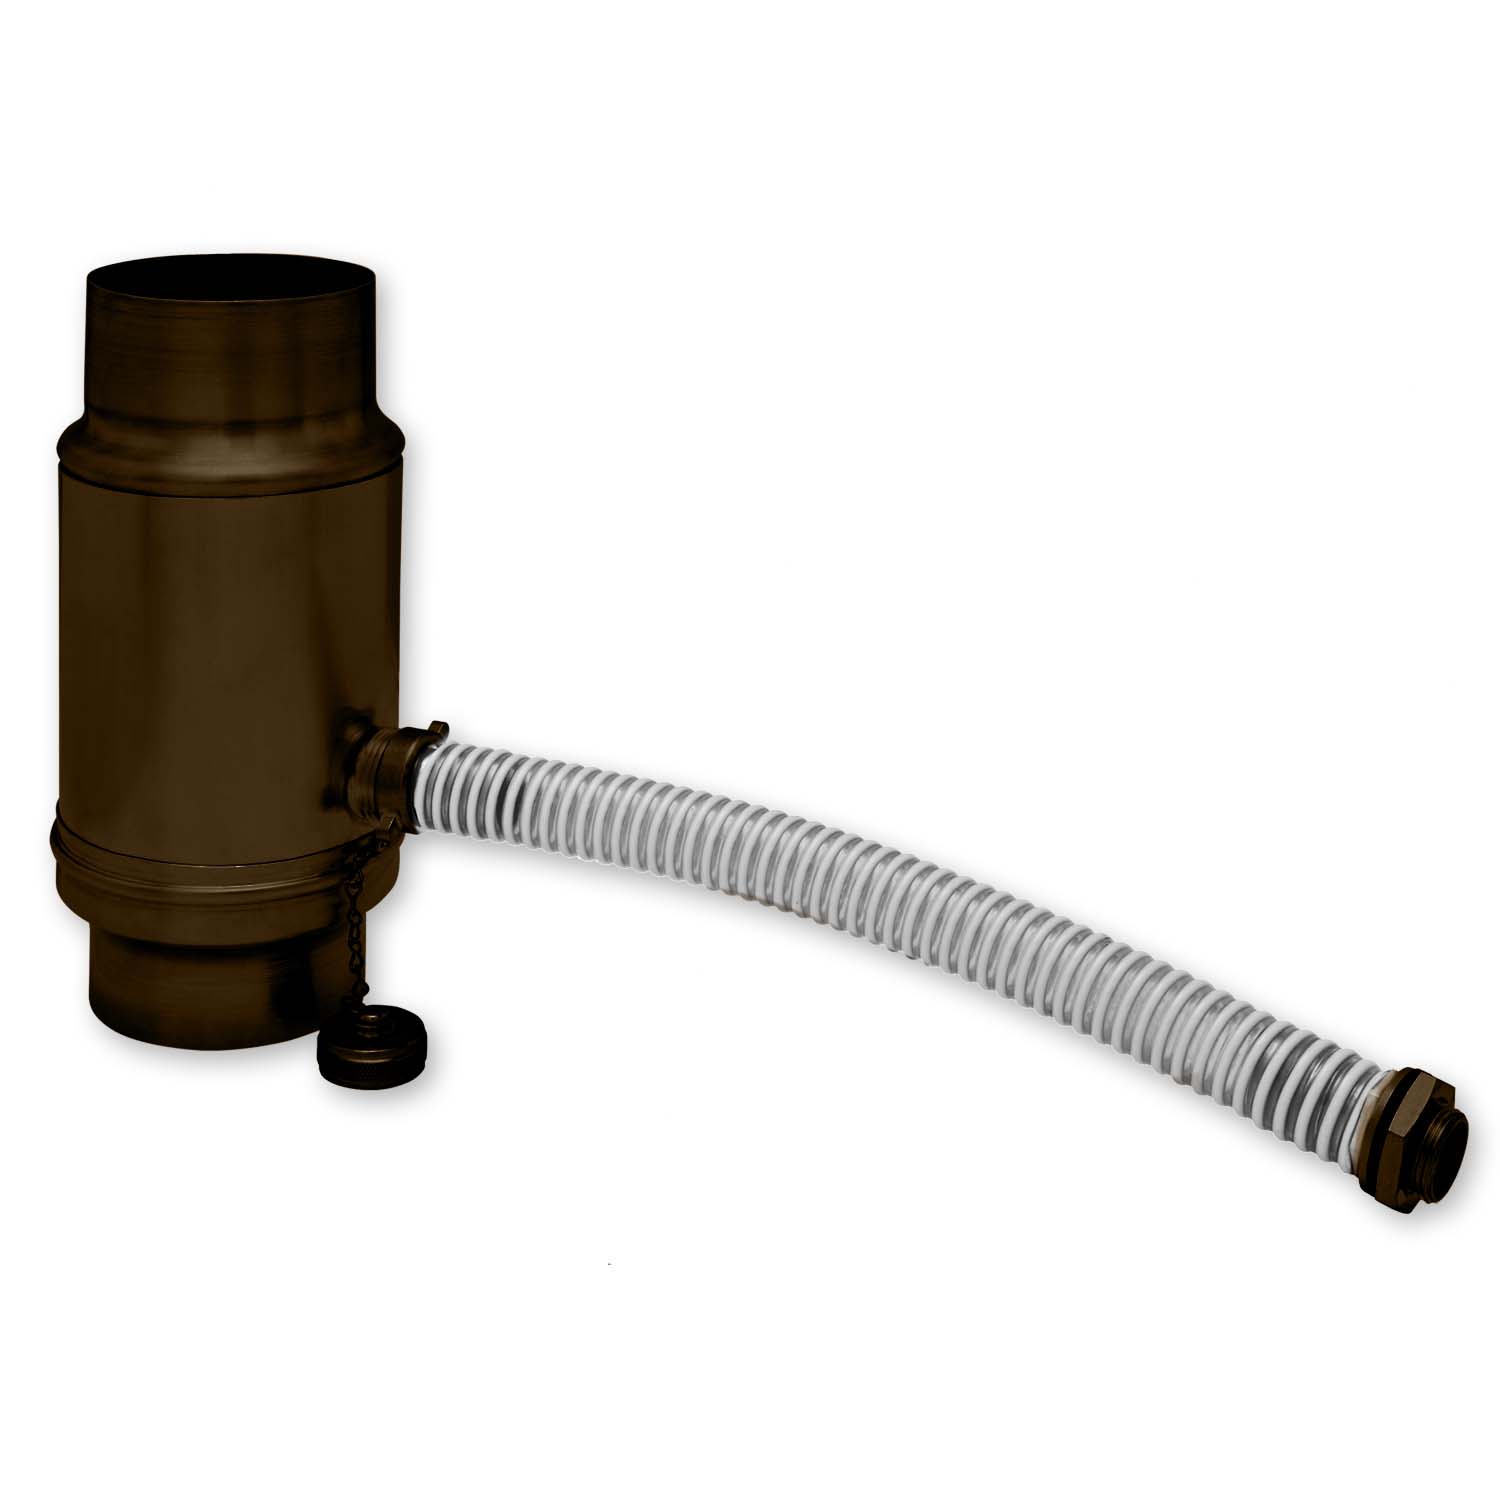 Zambelli Regenwassersammler 100 mm, verzinkt Braun Testa di Moro, mit Schlauchanschlussset